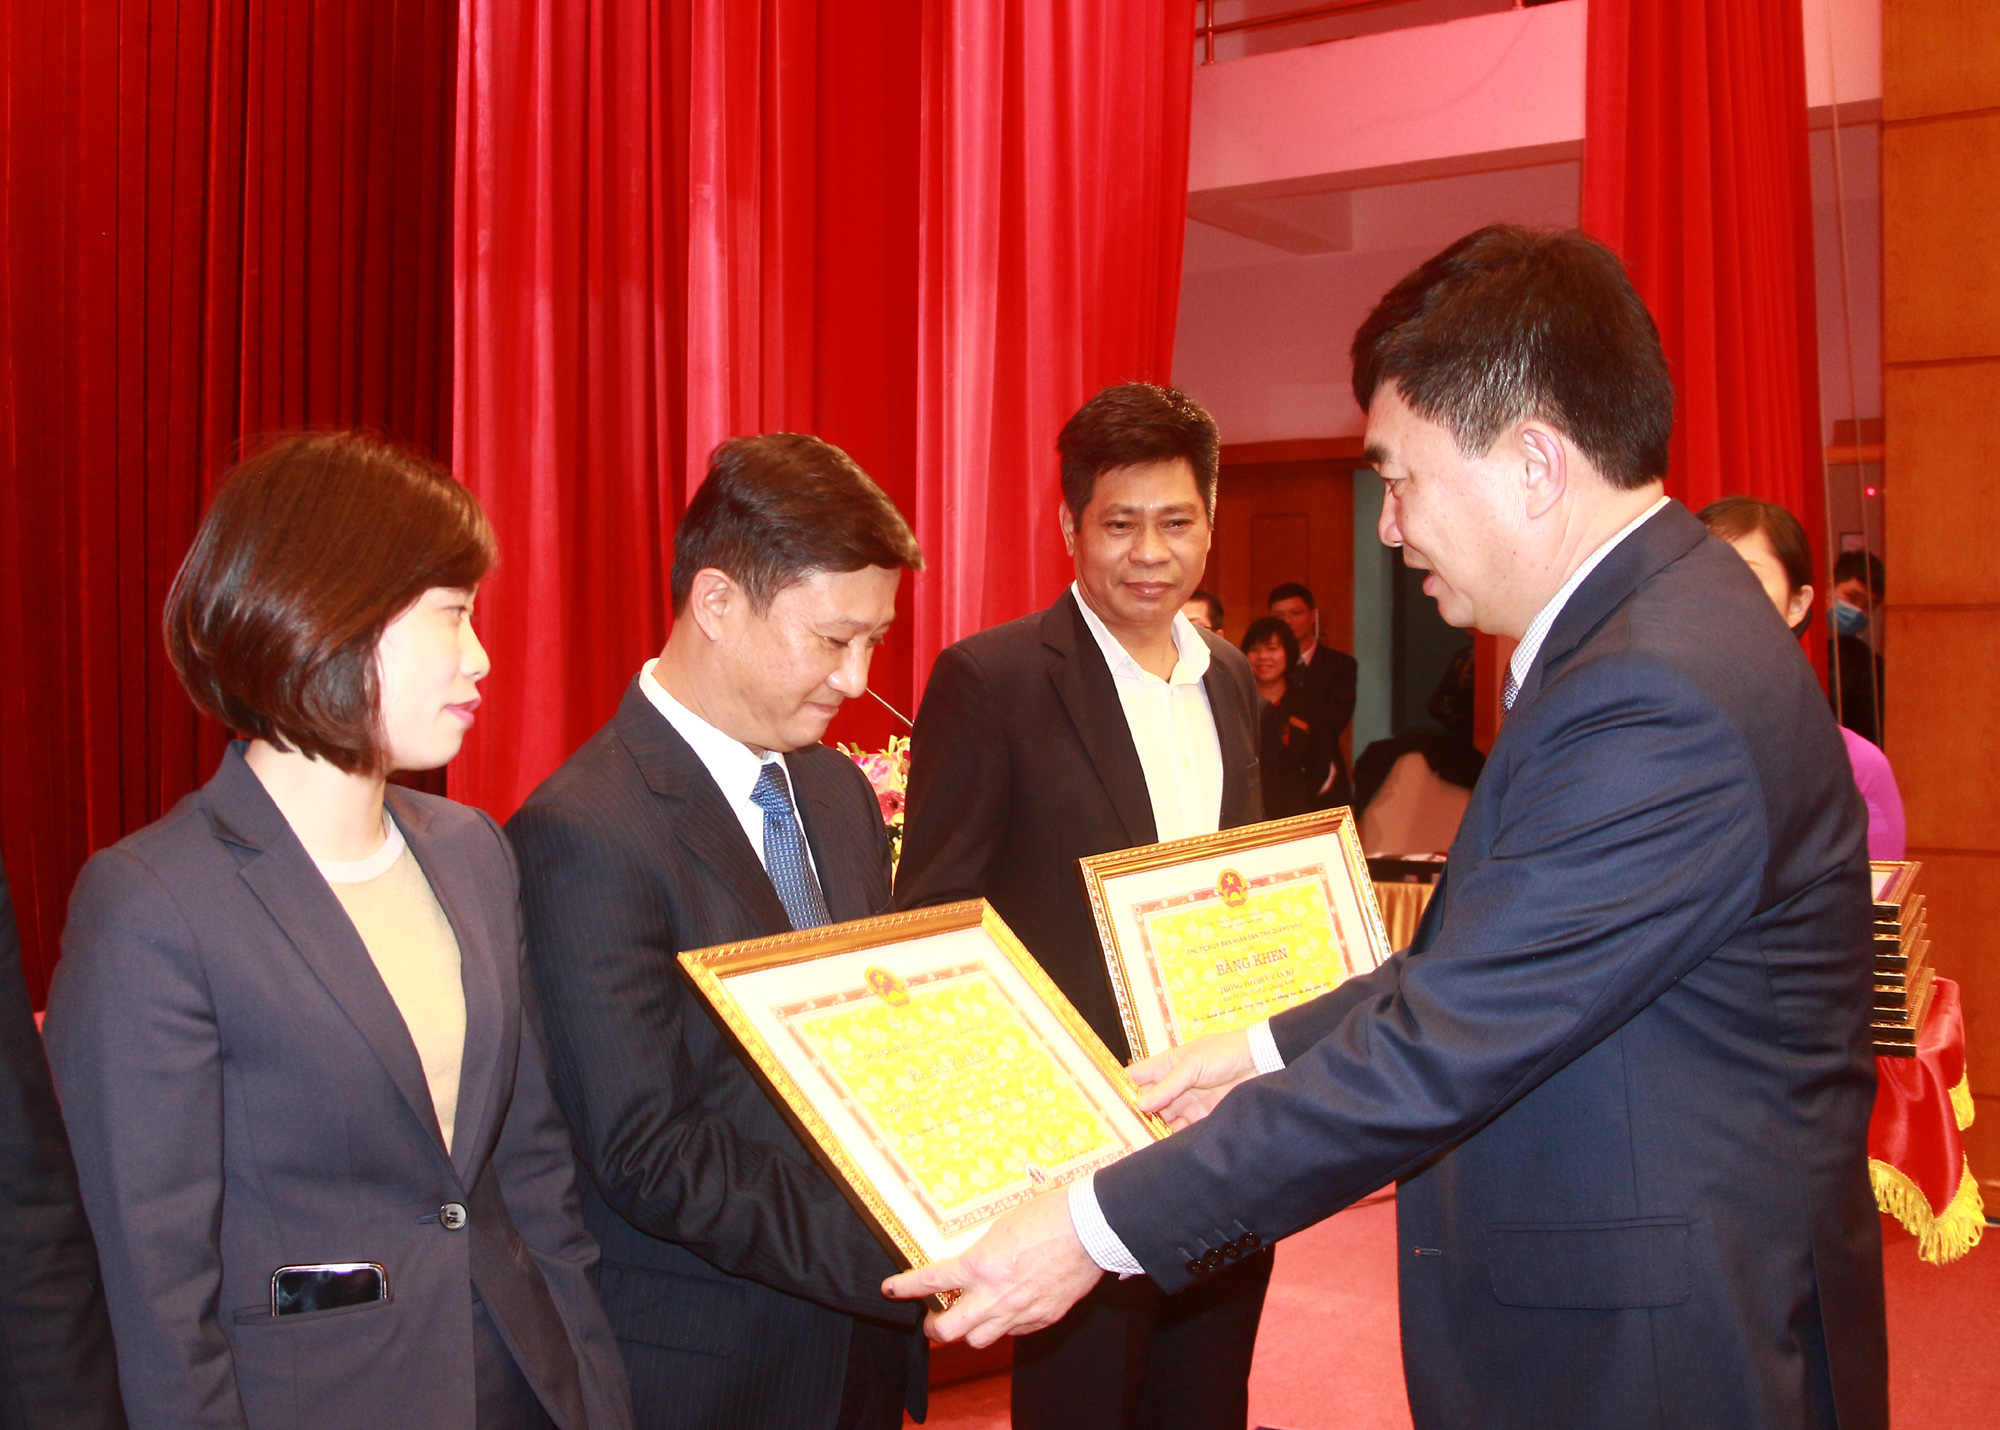 Đồng chí Ngô Hoàng Ngân, Phó Bí thư Thường trực Tỉnh ủy, trao Bằng khen của UBND tỉnh cho các tập thể có thành tích xuất sắc.